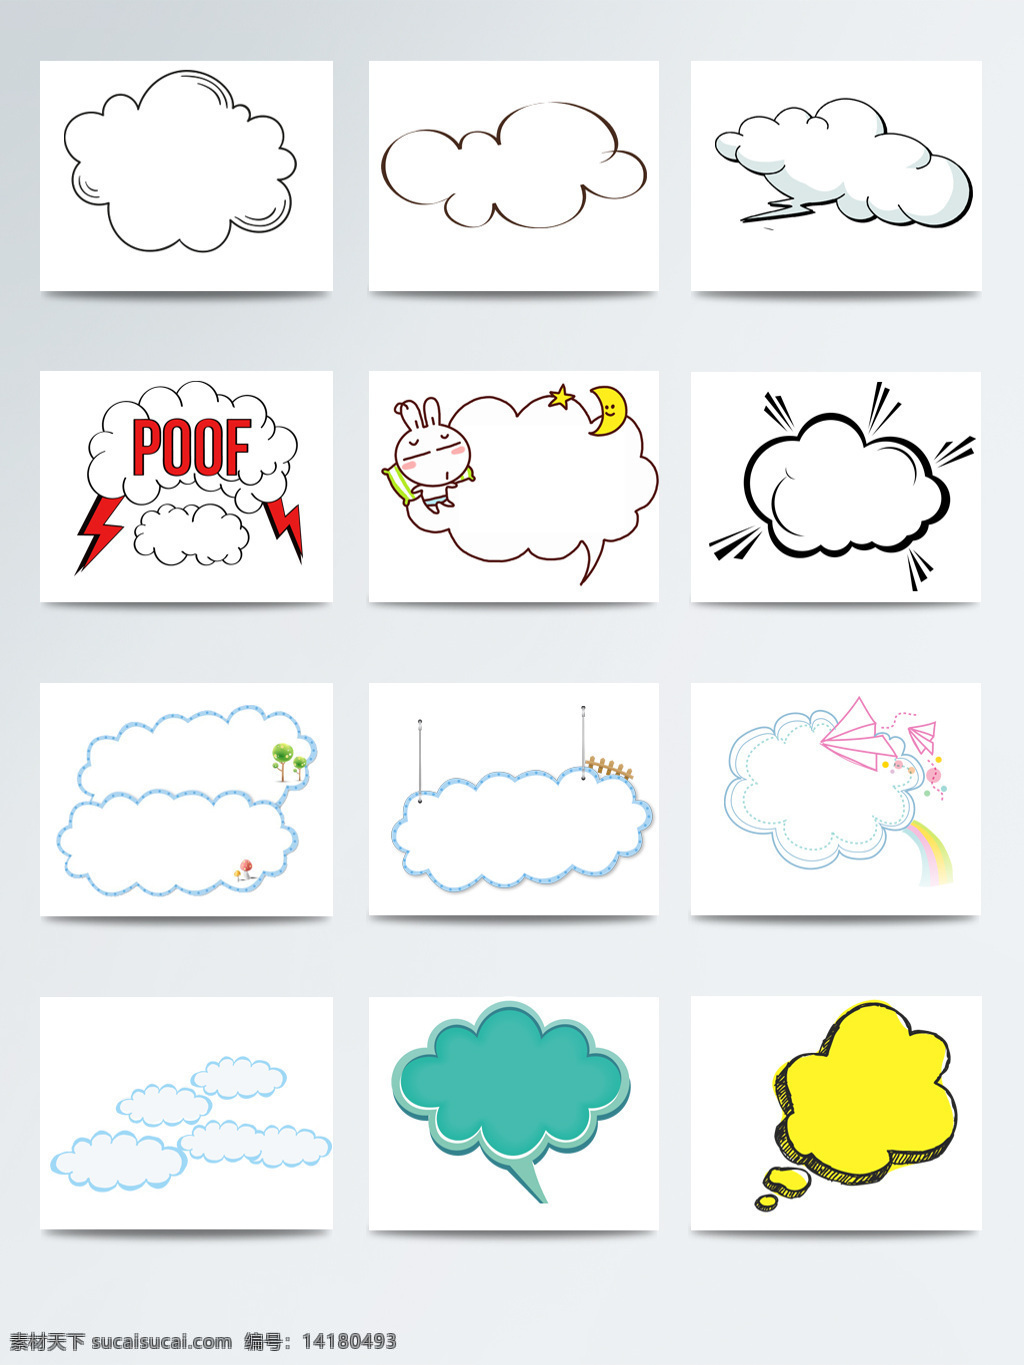 手绘 卡通 可爱 白云 爆炸 对话框 爆炸对话框 对话框素材 卡通素材 可爱白云 可爱对话框 可爱卡通 手绘卡通 云朵对话框